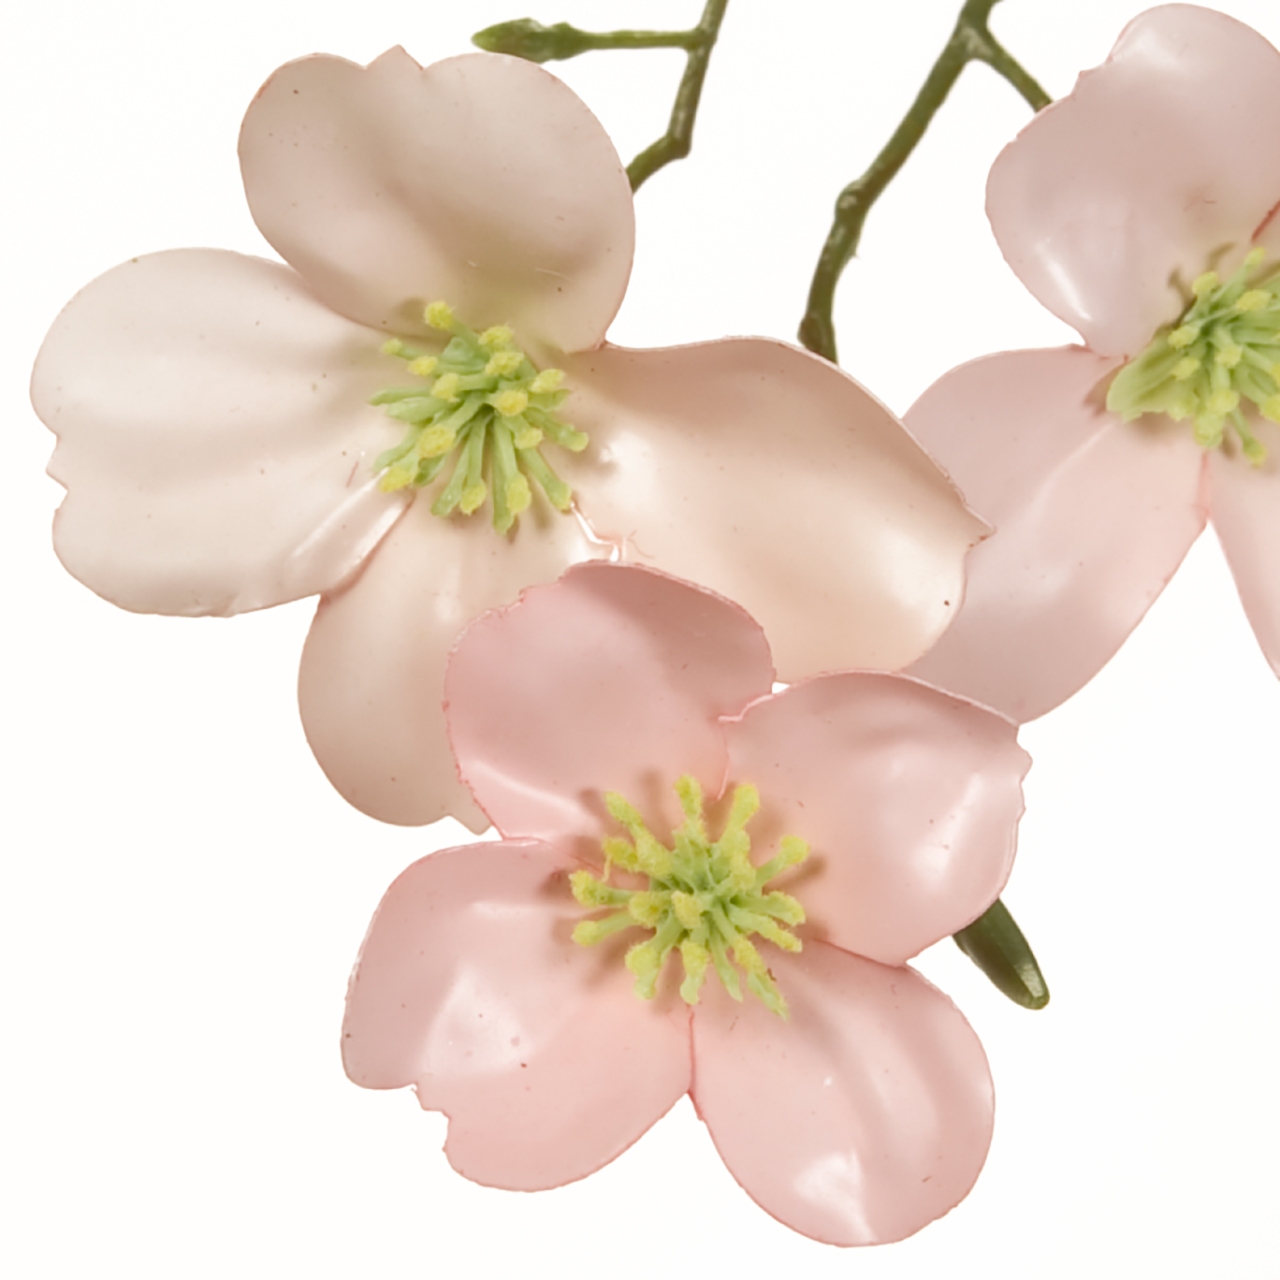 マイフラ 通販 Magiq 花みずきポーセリナ ライトピンク アーティフィシャルフラワー 造花 Fm 002 ハナミズキ ライトピンク Magiq アーティフィシャルフラワー 造花 全国にmagiq 花器 花資材などをお届けします